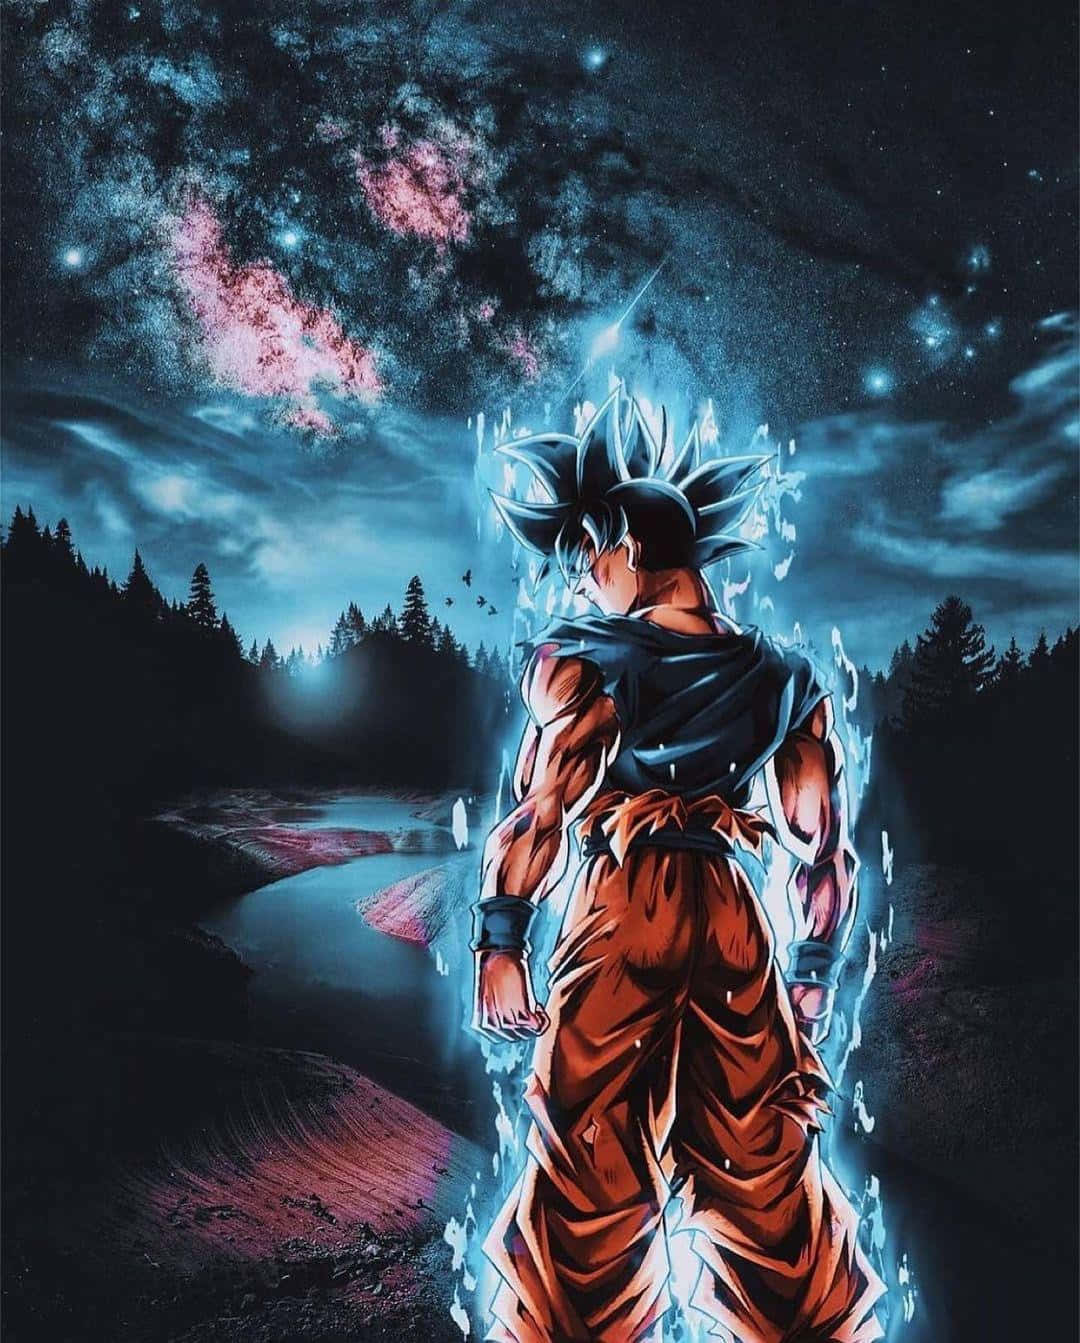 Gokuförvandlas Till Ultra Instinct.